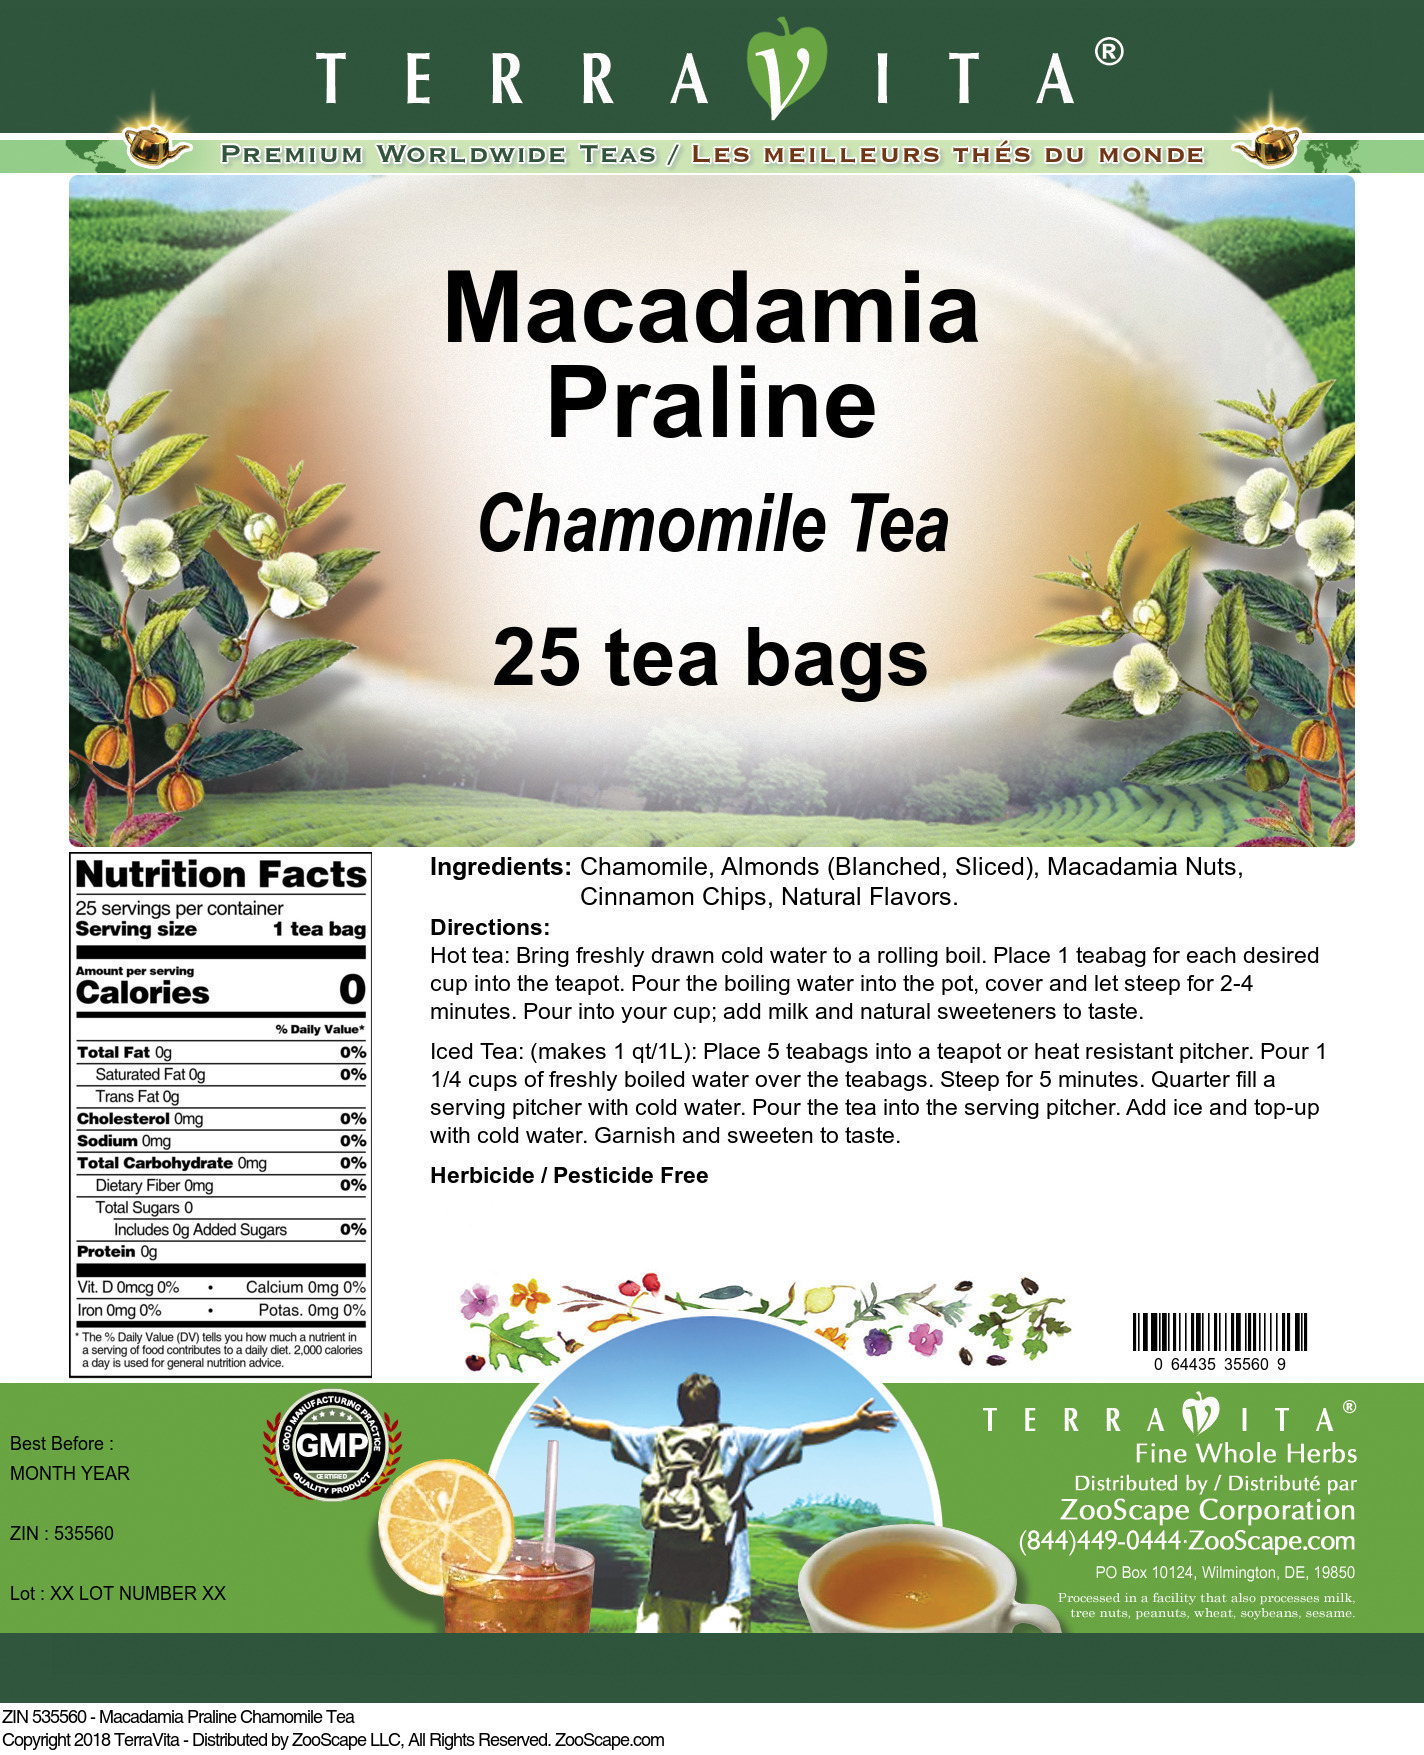 Macadamia Praline Chamomile Tea - Label